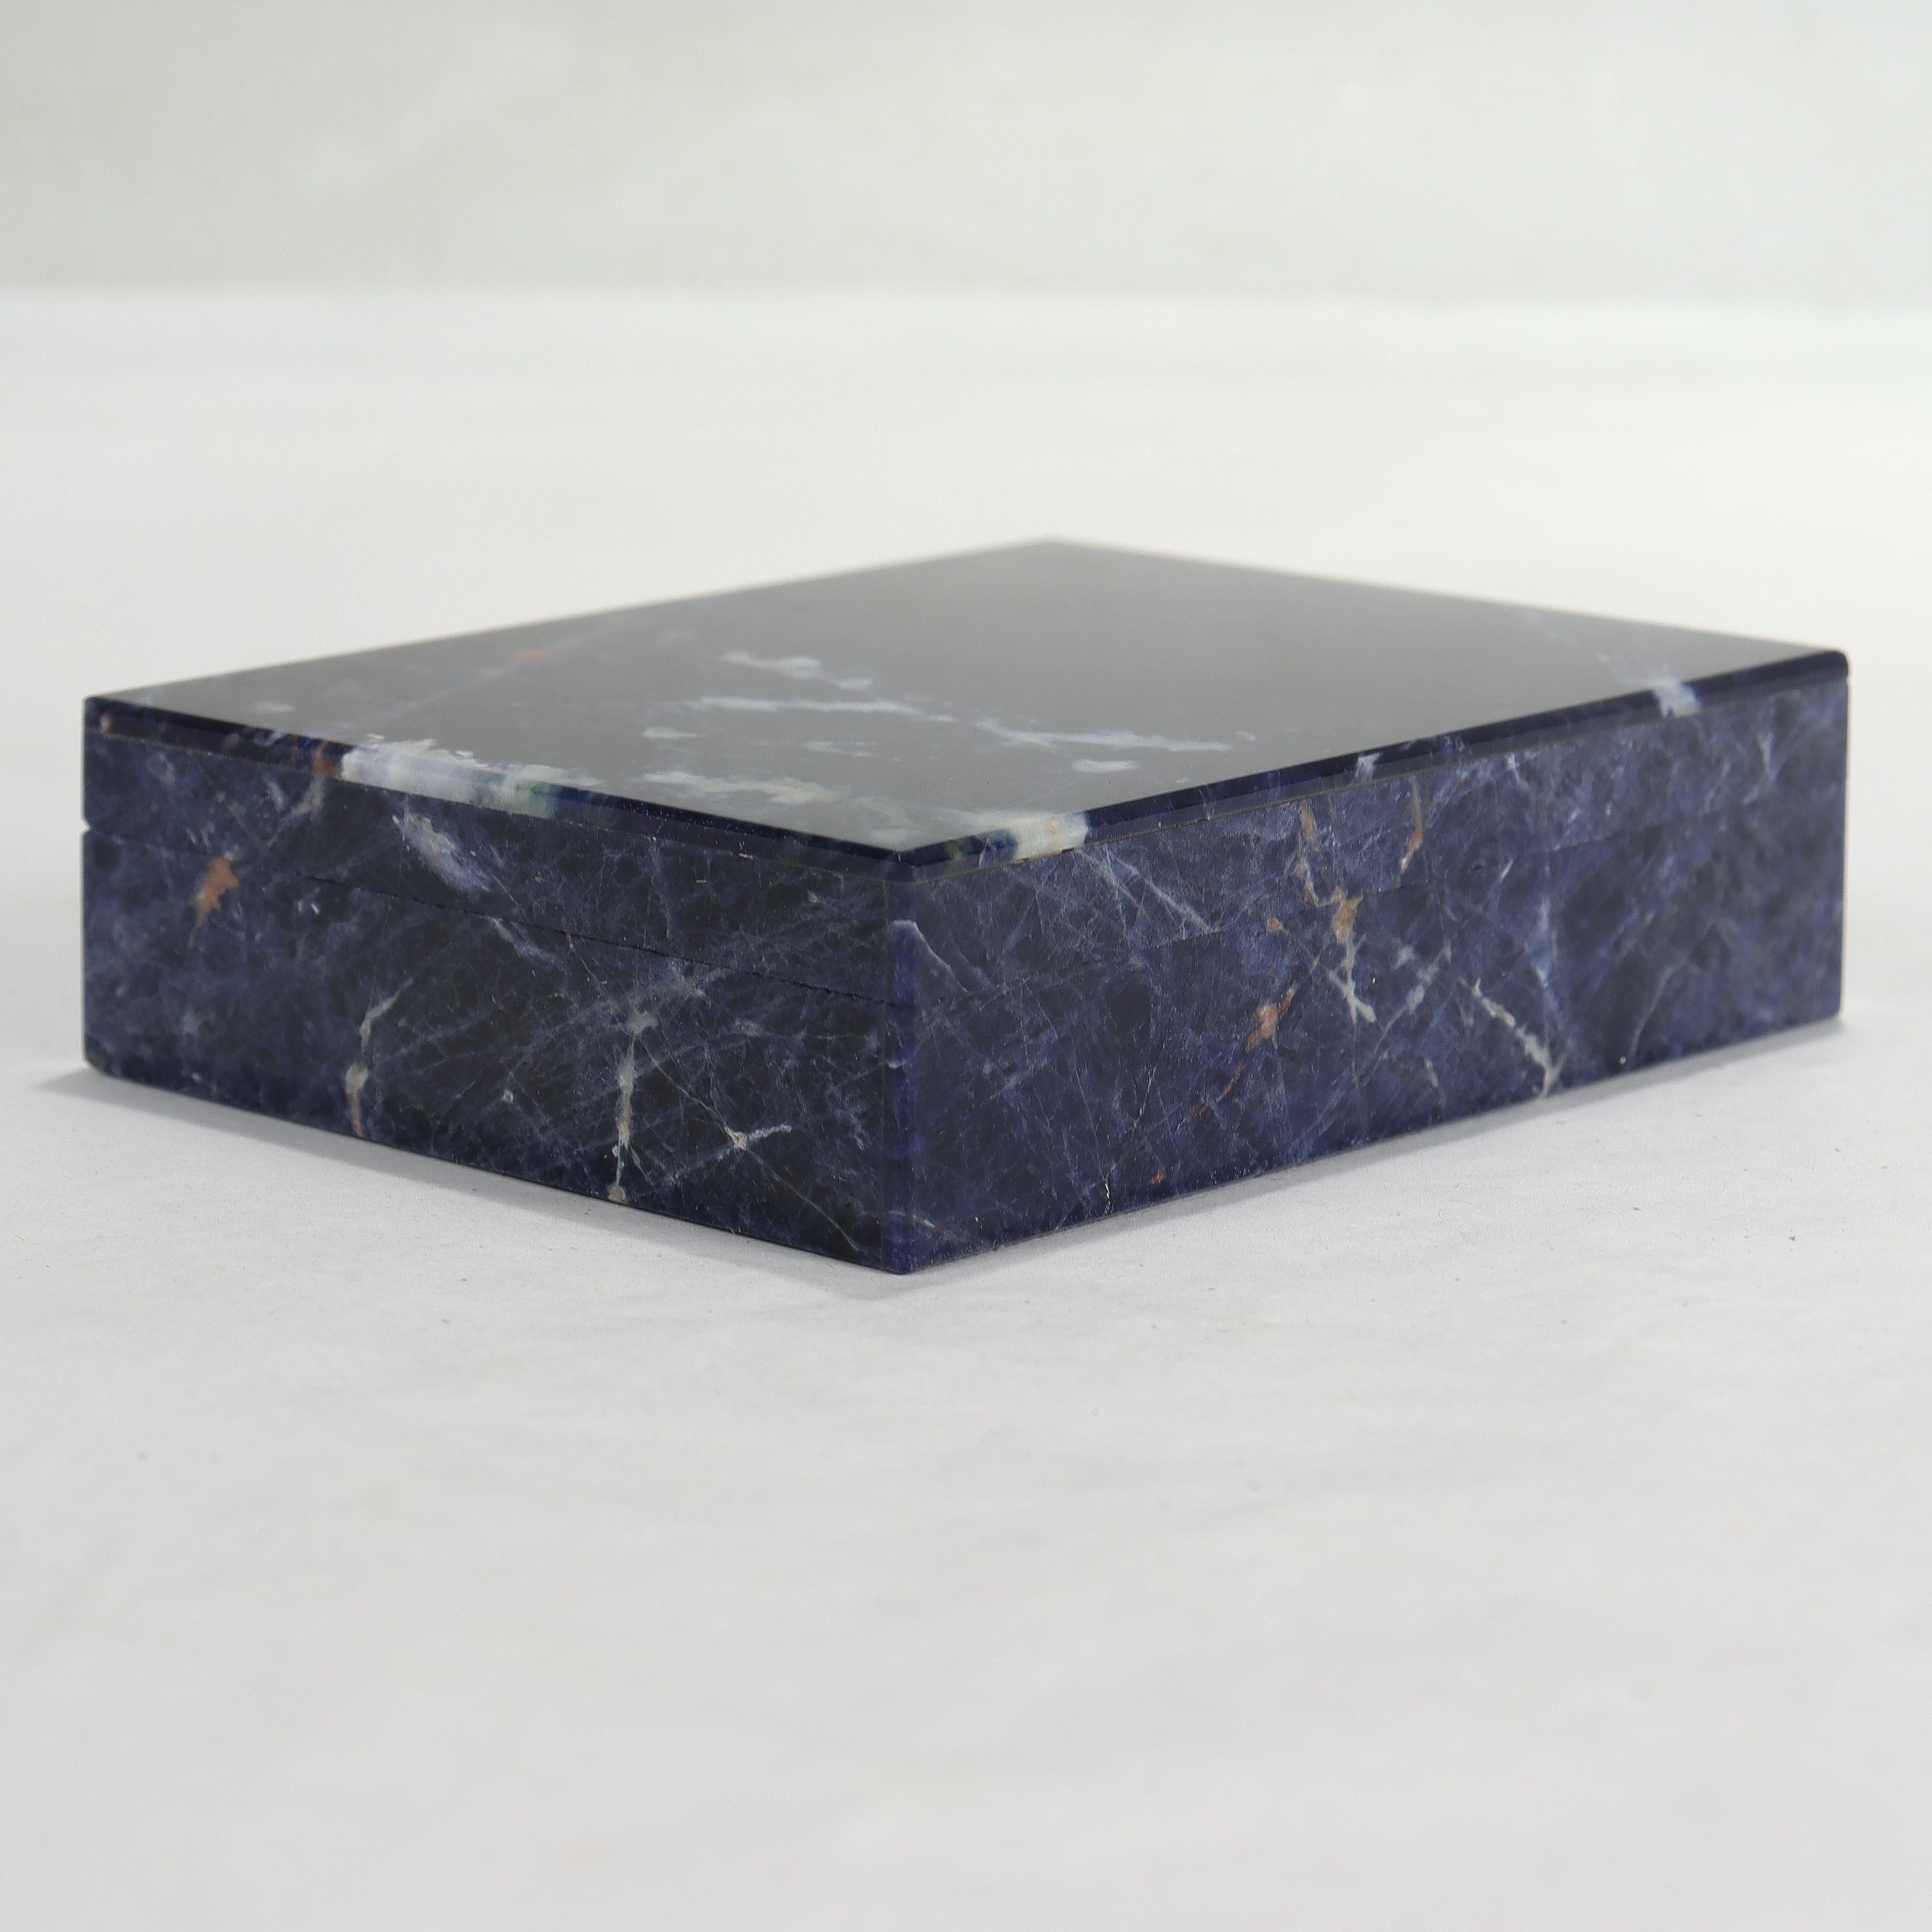 Eine feine kleine italienische Mid-Century Modern Kommode oder Tisch Box.

Mit Blättern aus Lapislazuli auf schwarzem Marmor und einer feinen 800er Silbermontierung und Scharnier.

Einfach eine wunderschöne Tischschatulle aus der